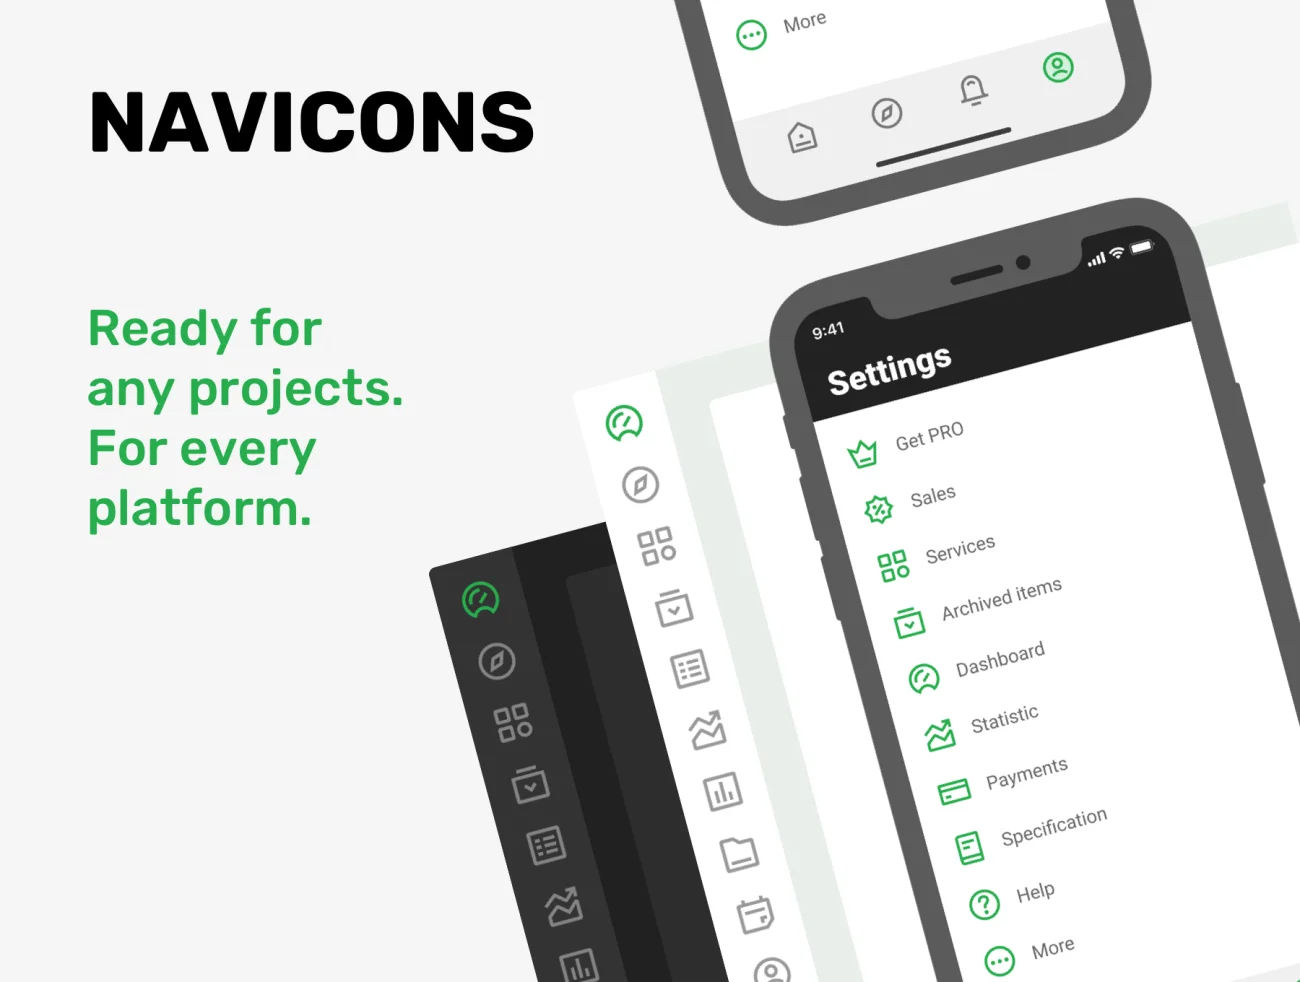 240款导航引导图标合集 NAVICONS. Icons in 4 styles-3D/图标-到位啦UI